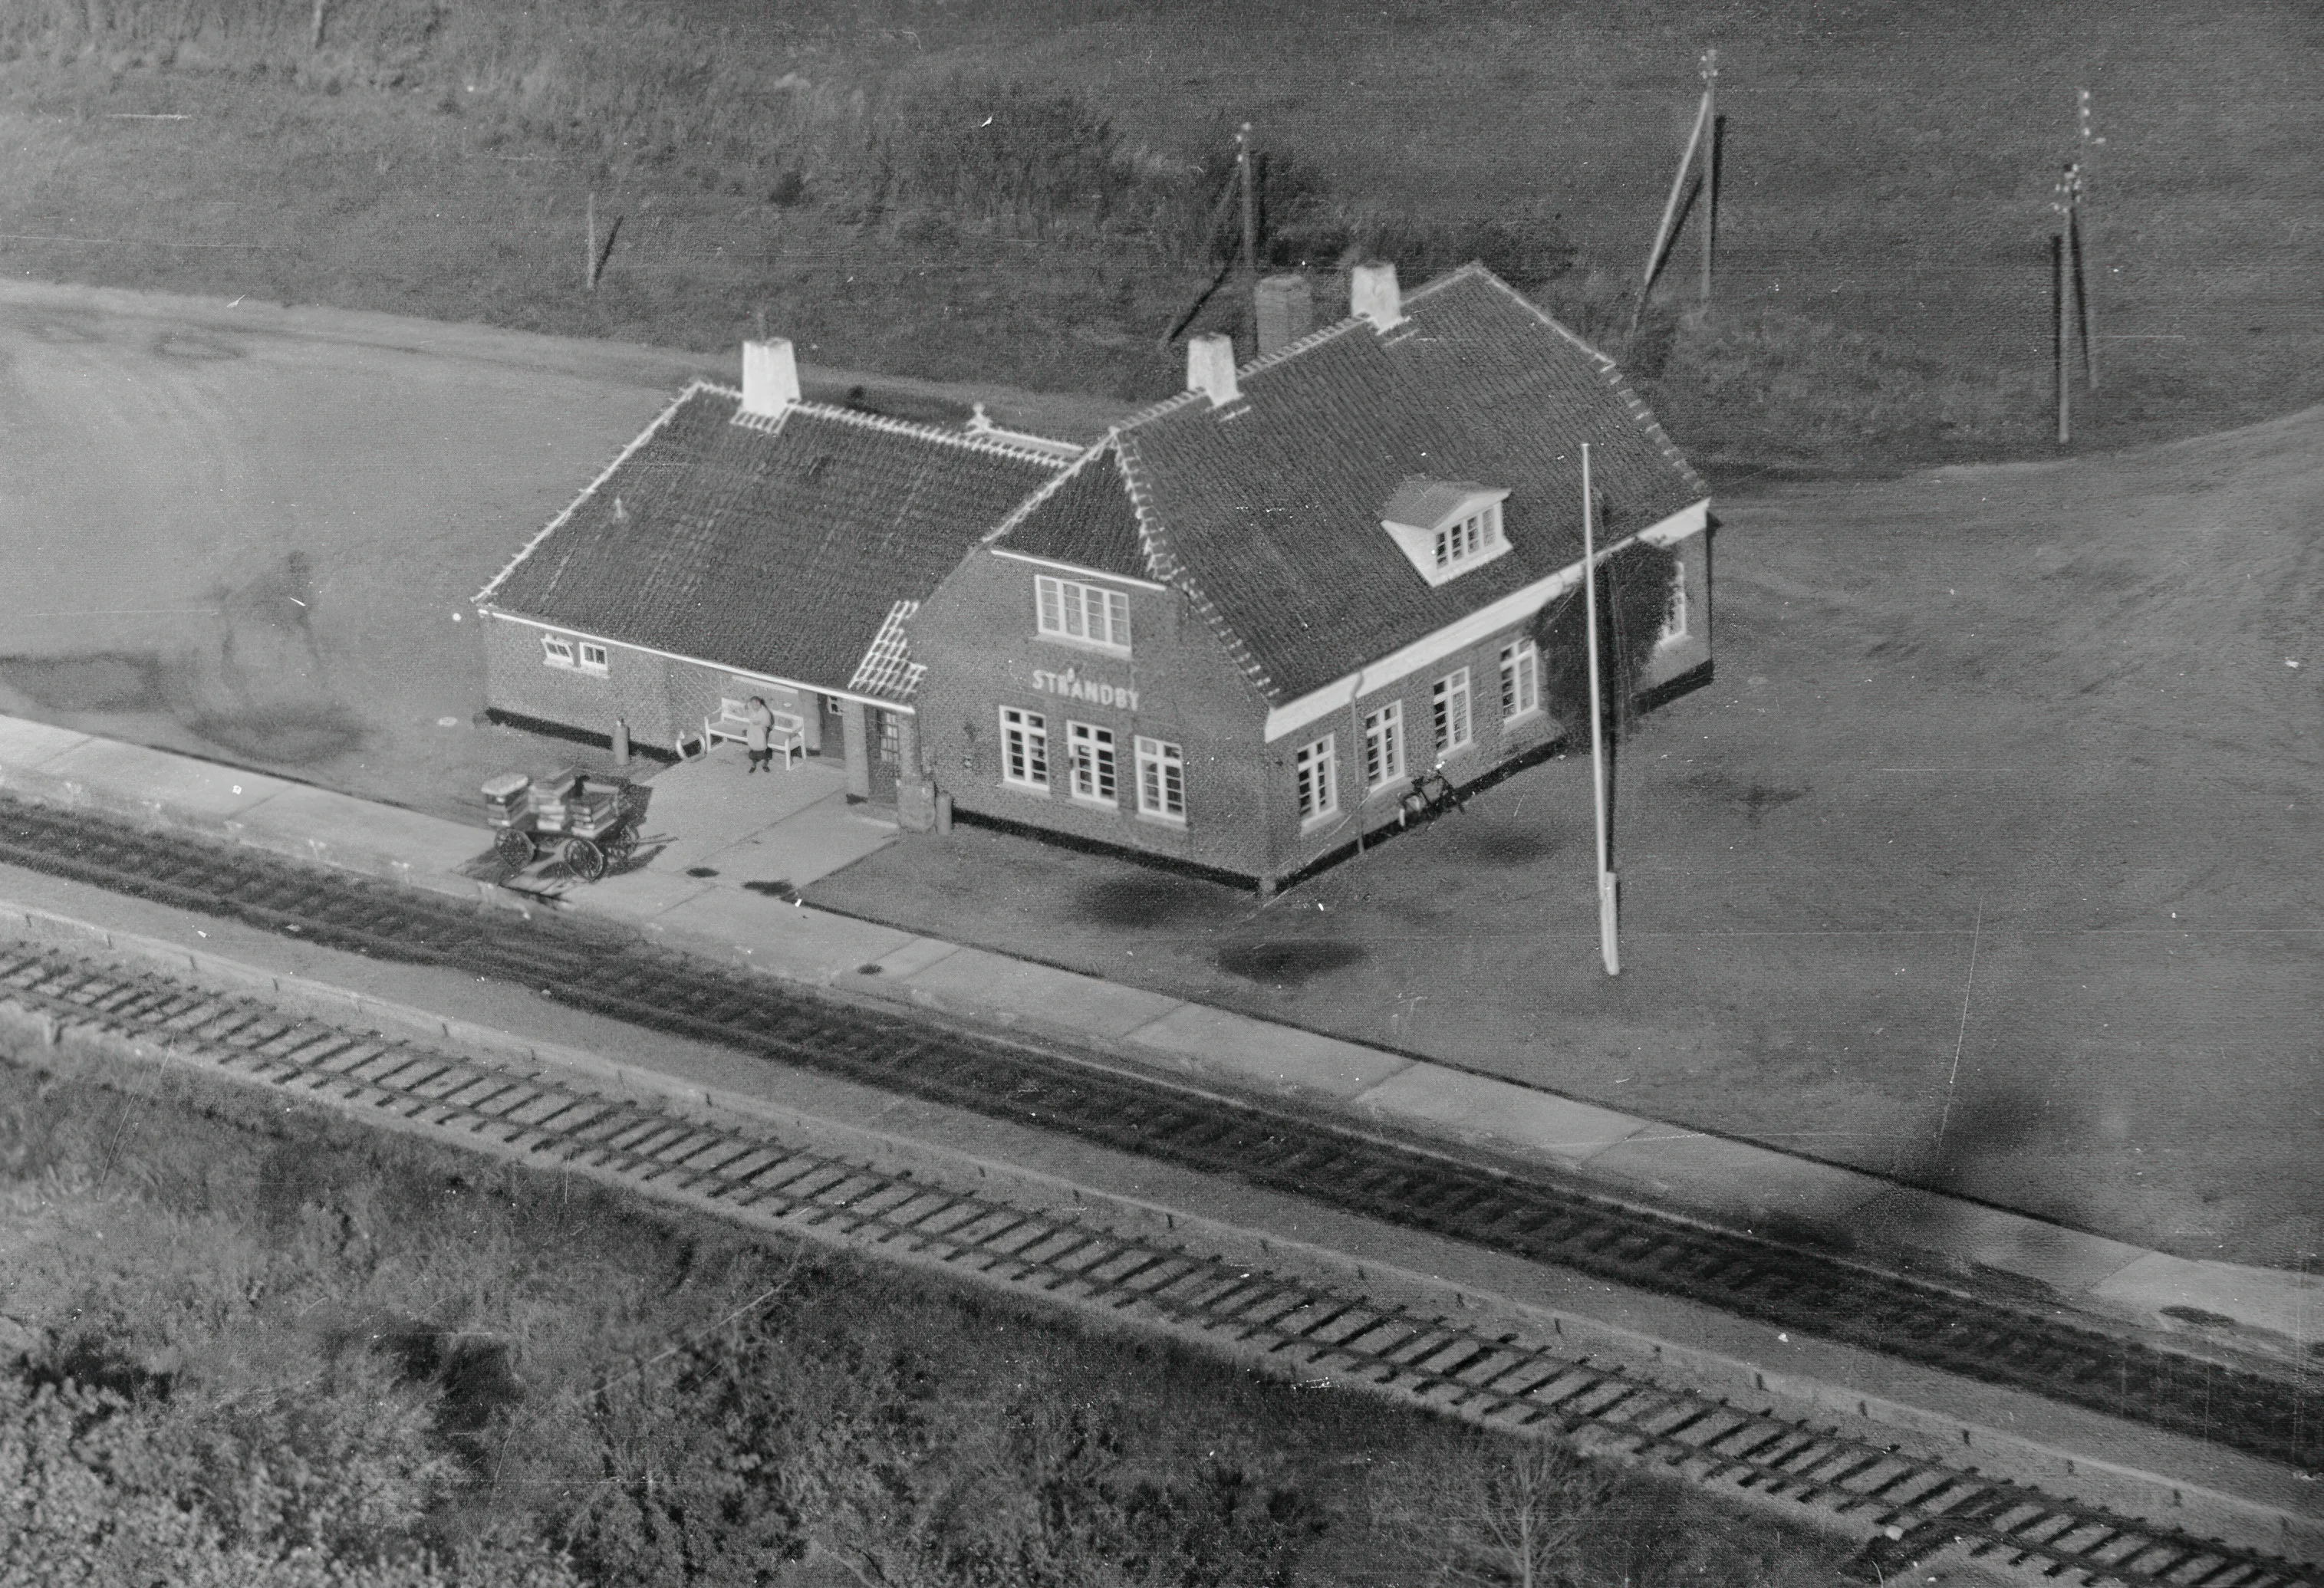 Billede af Strandby Station.